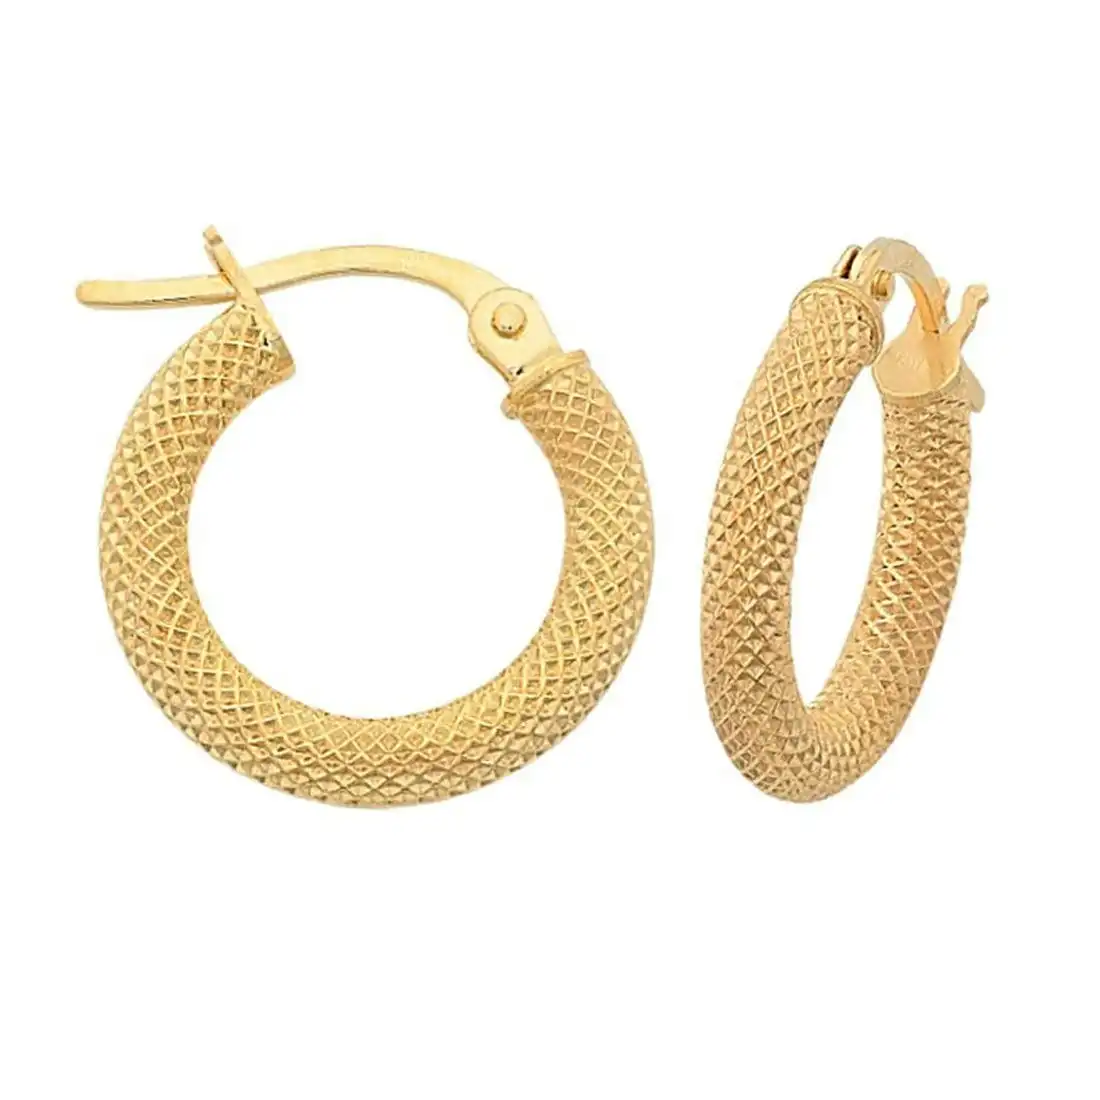 Fancy Mesh Style 20mm Hoop Earrings in 9ct Yellow Gold